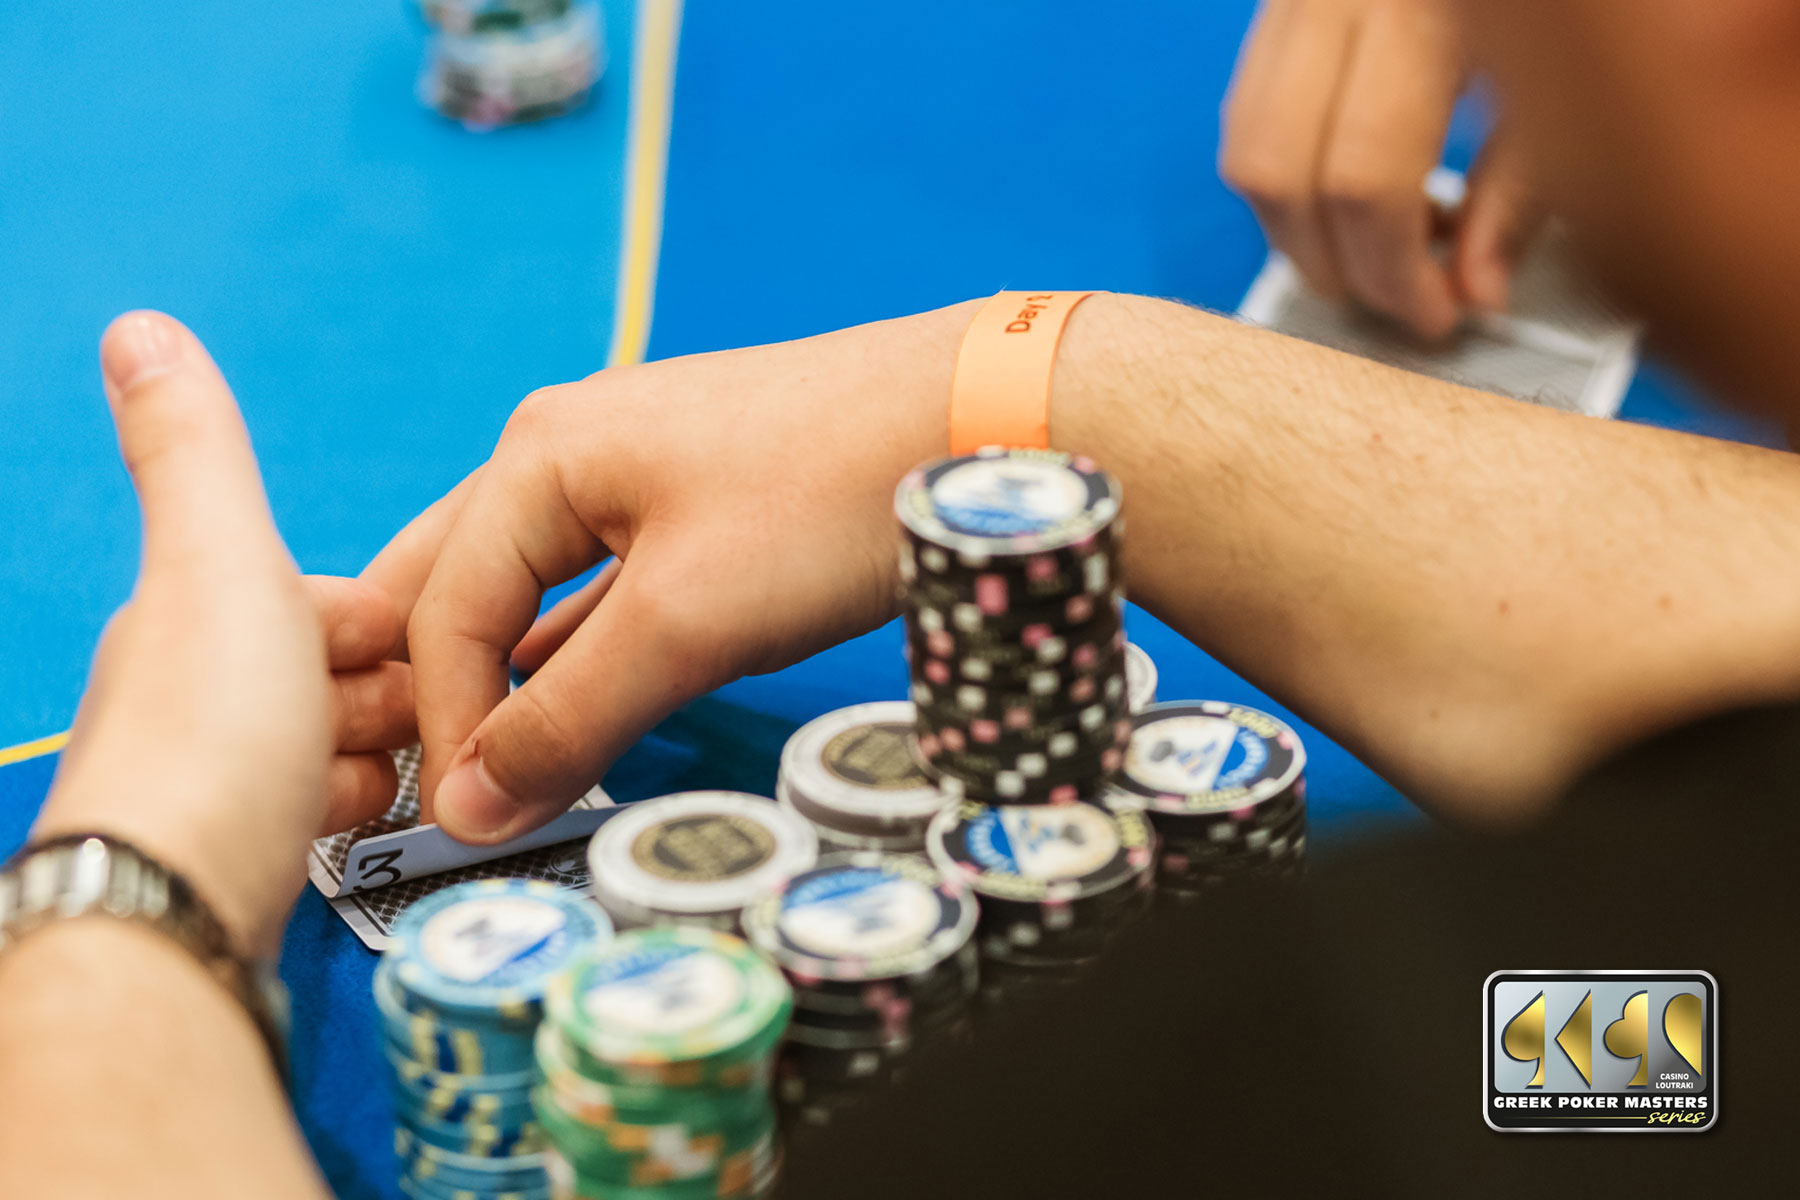 Το κορυφαίο τουρνουά poker της χρονιάς στο Καζίνο Λουτρακίου! - ΕΛΛΑΔΑ